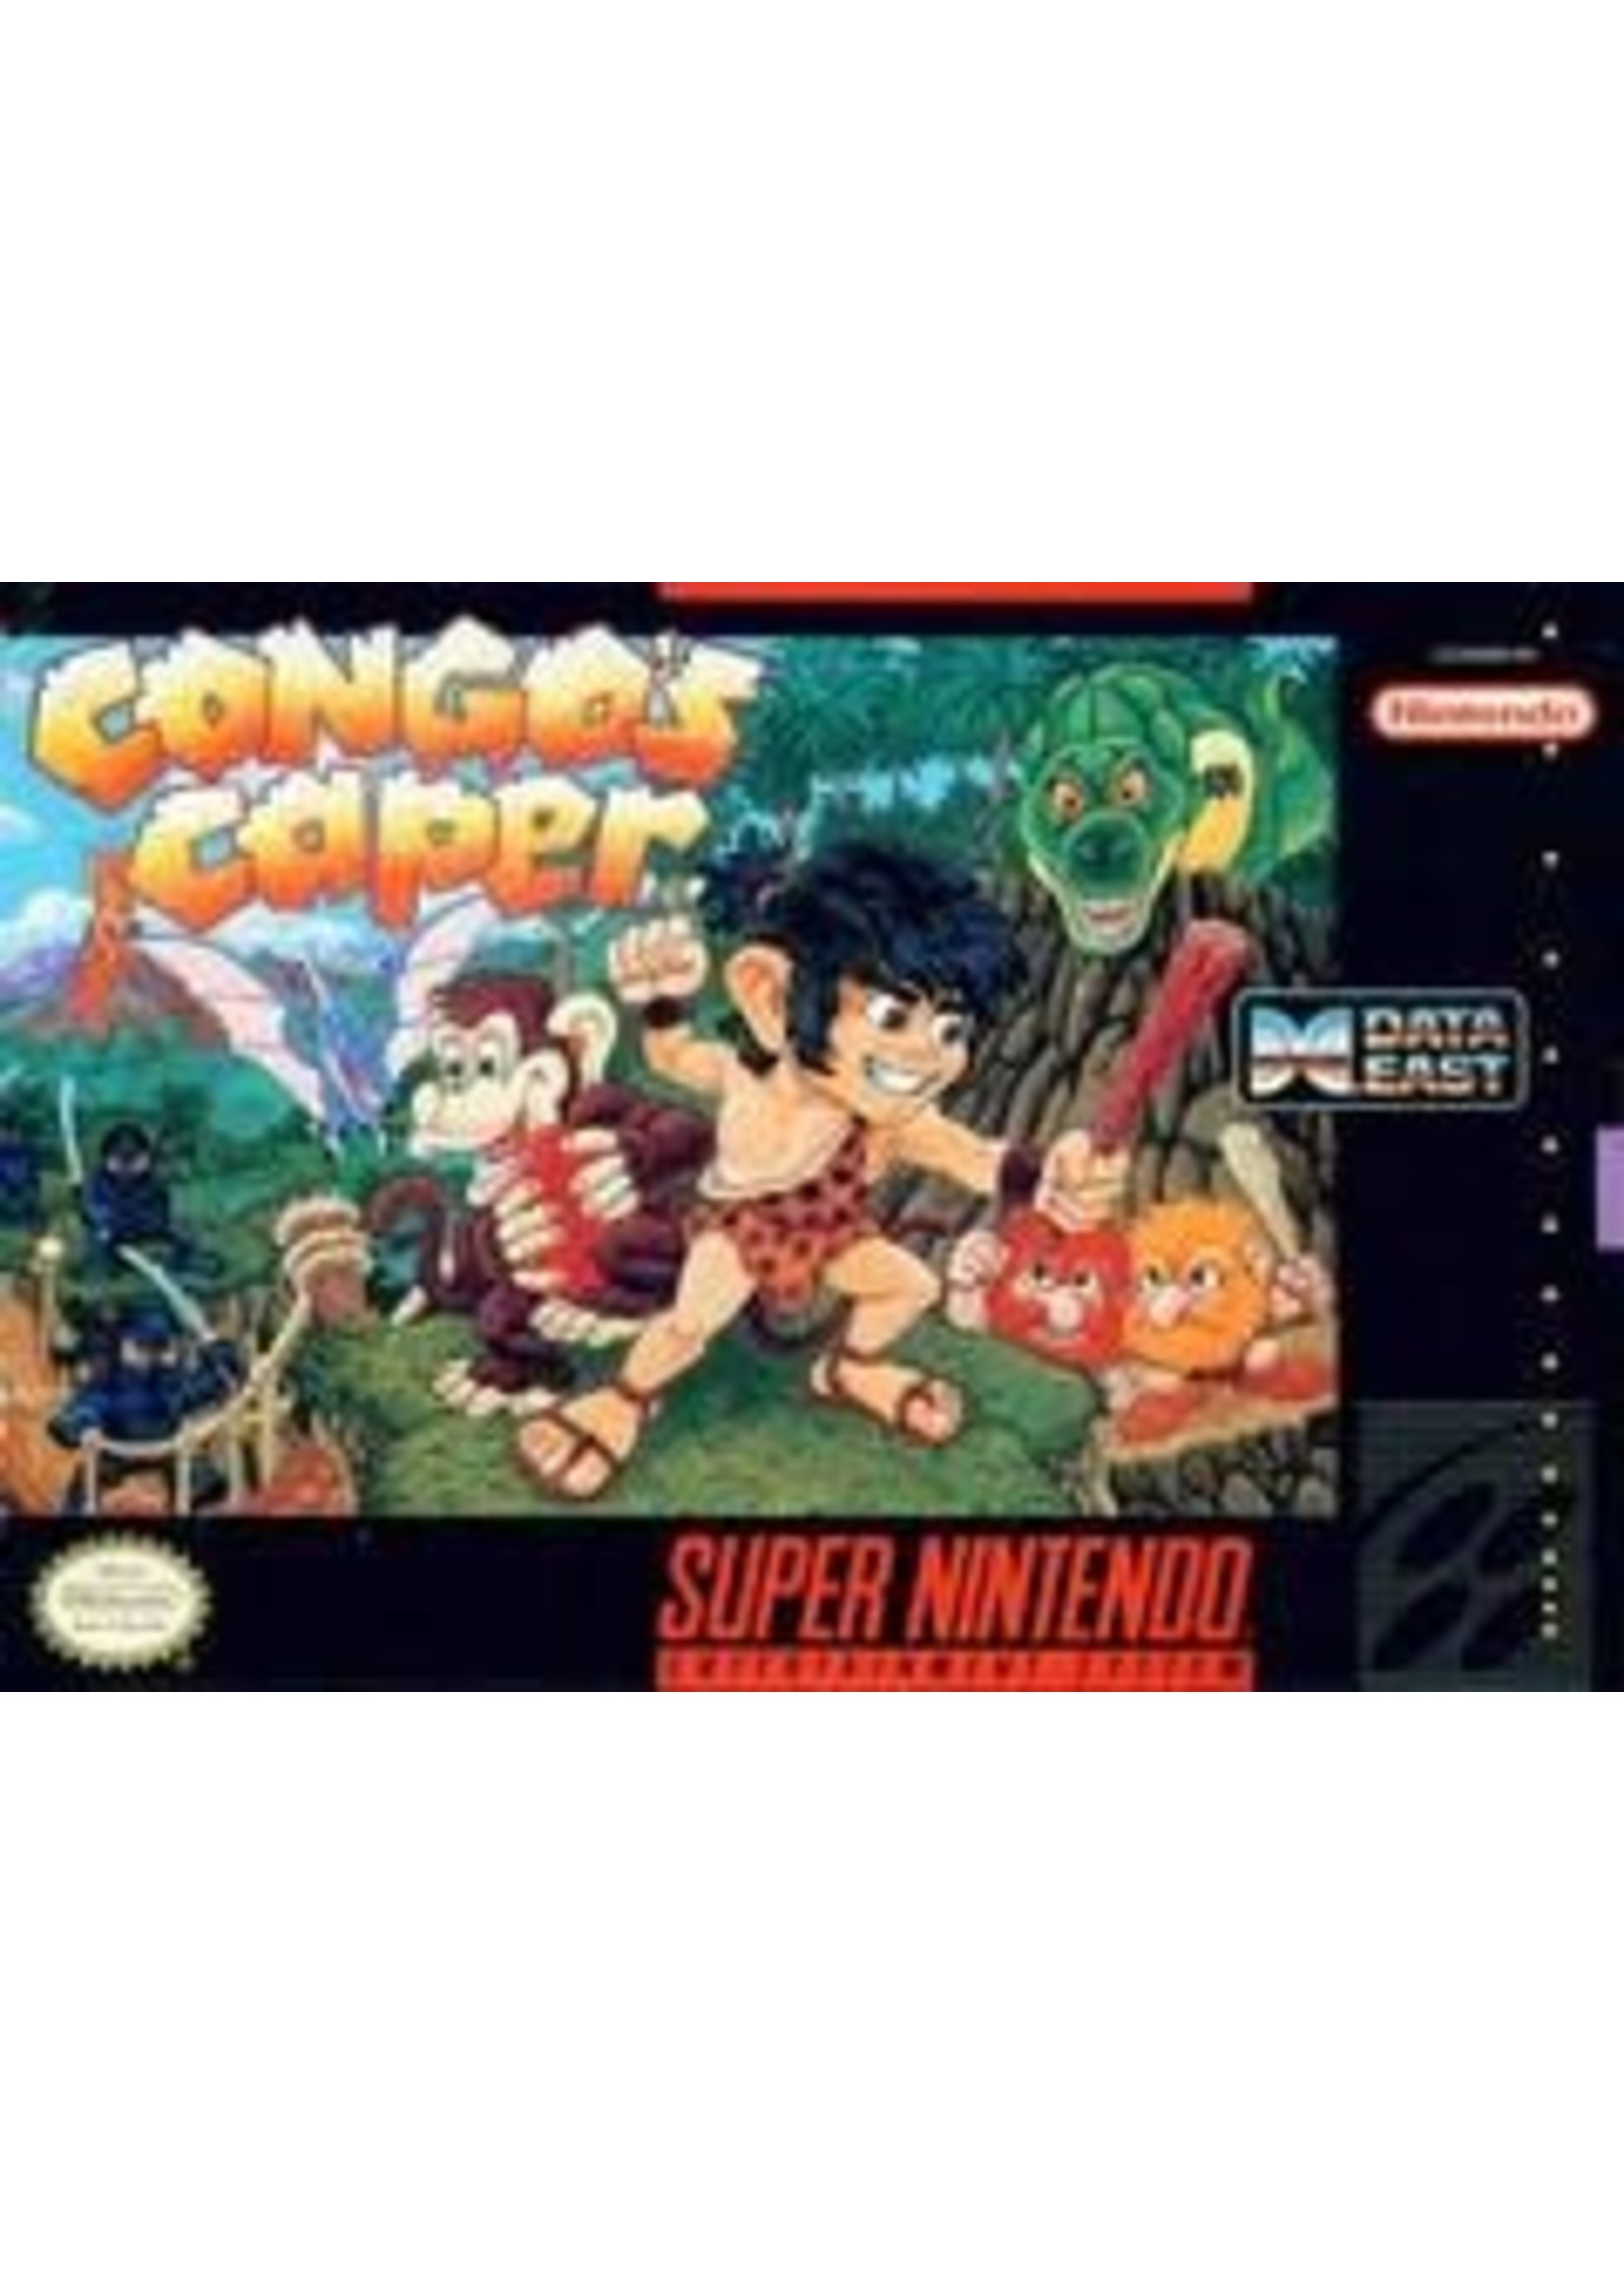 Congo's Caper Super Nintendo CART ONLY